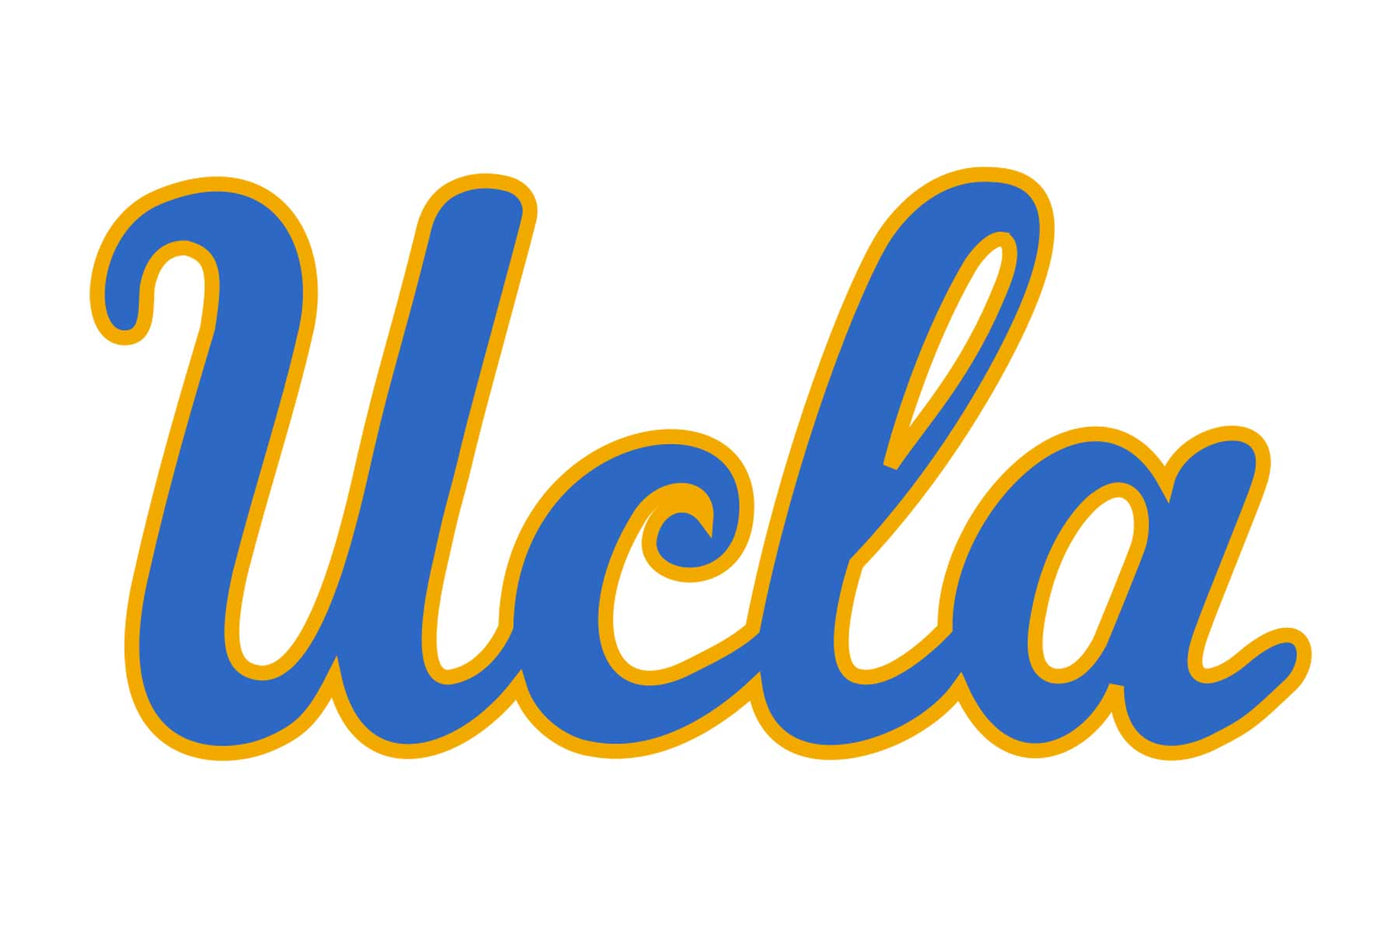 UCLA Bruins Football Helmet